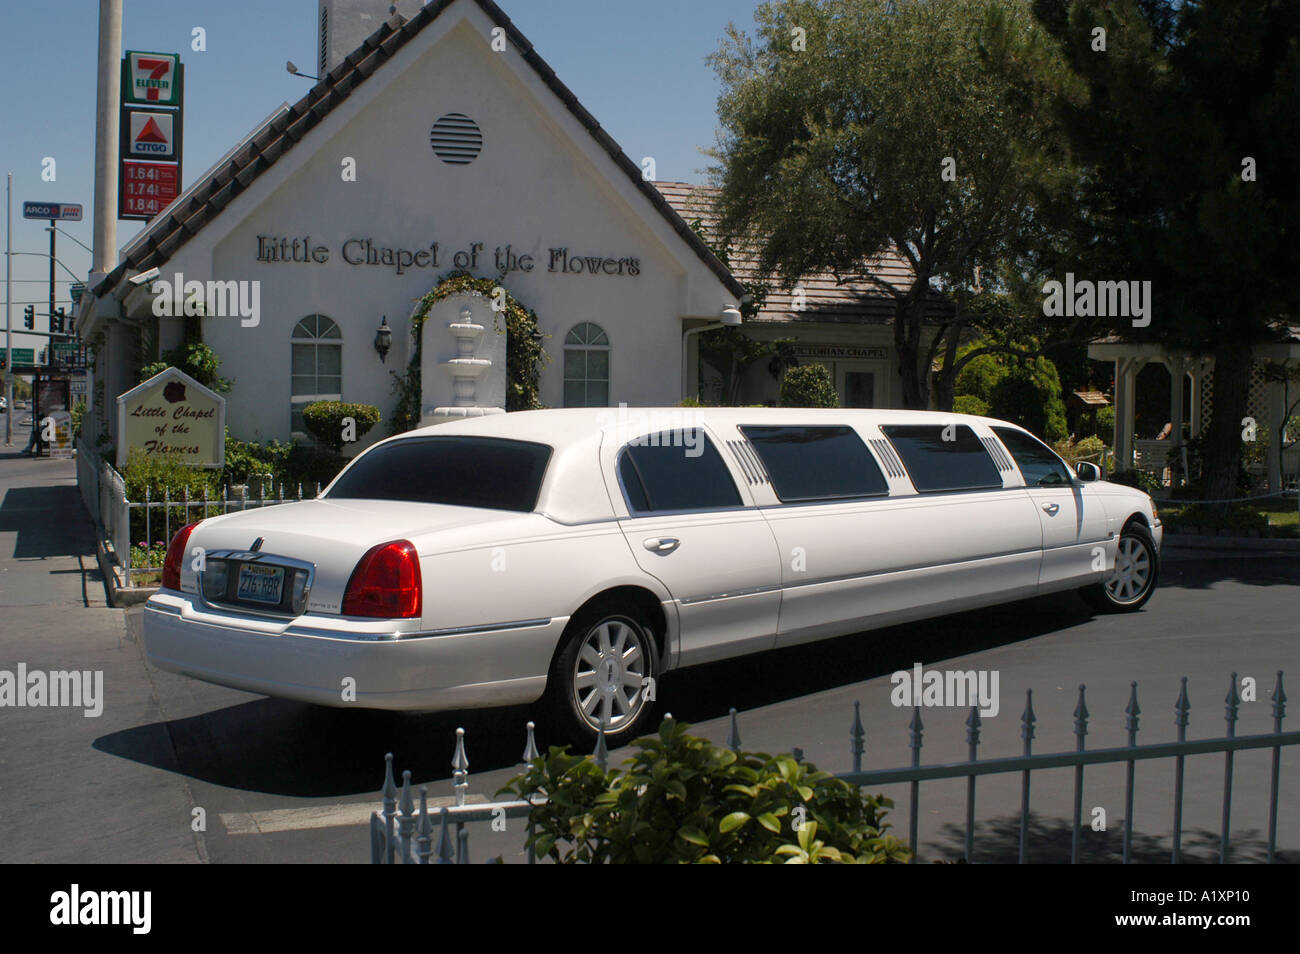 Una limousine stretch appartenente alla piccola cappella dei fiori uno dei molti nozze cappelle sul Las Vegas Boulevard la striscia Quick matrimoni sono ciò che Las Vegas è famosa per Foto Stock